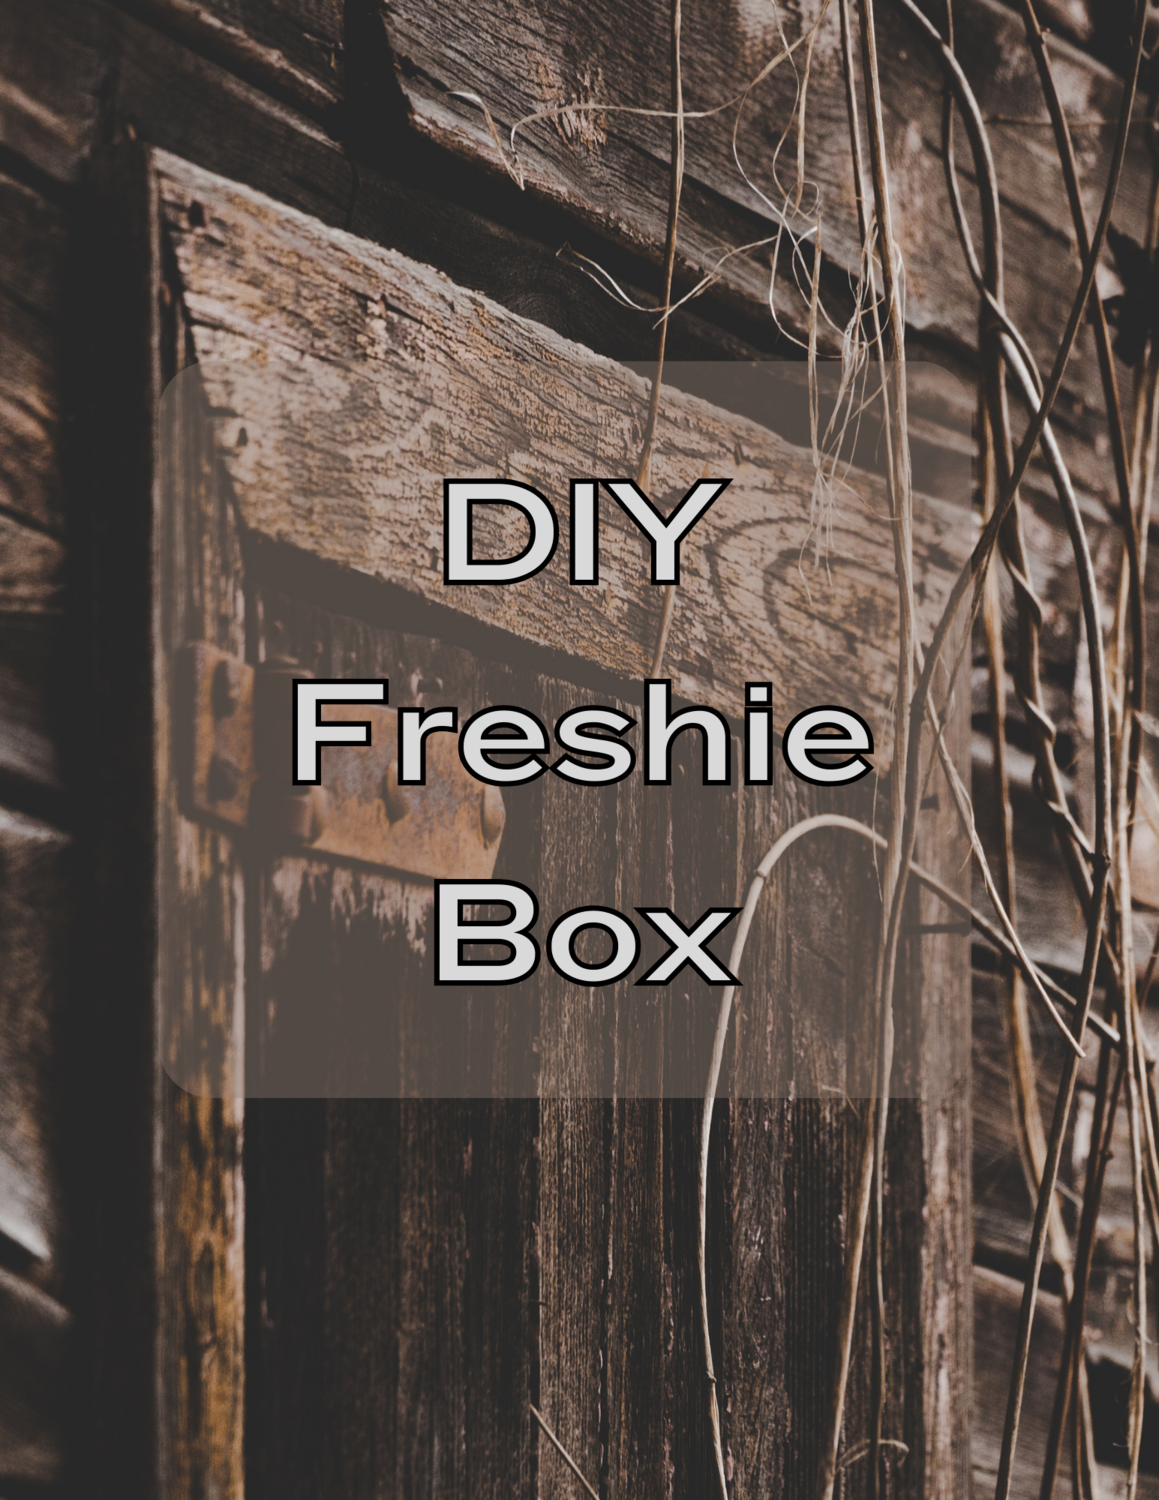 DIY Freshie Box